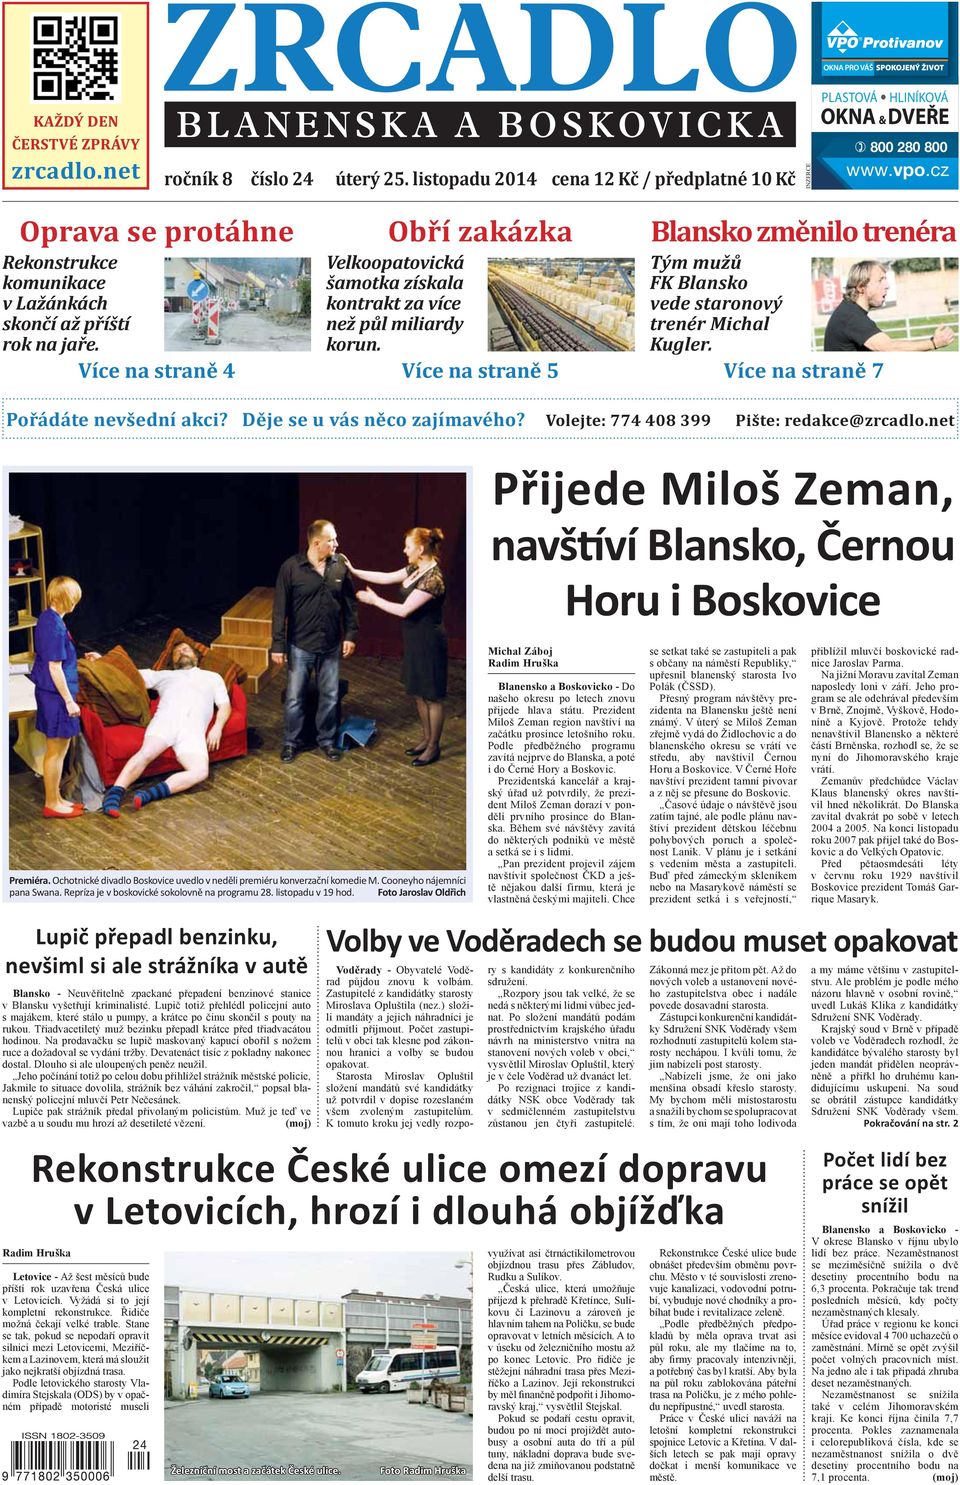 Přijede Miloš Zeman, navš ví Blansko, Černou Horu i Boskovice - PDF Stažení  zdarma